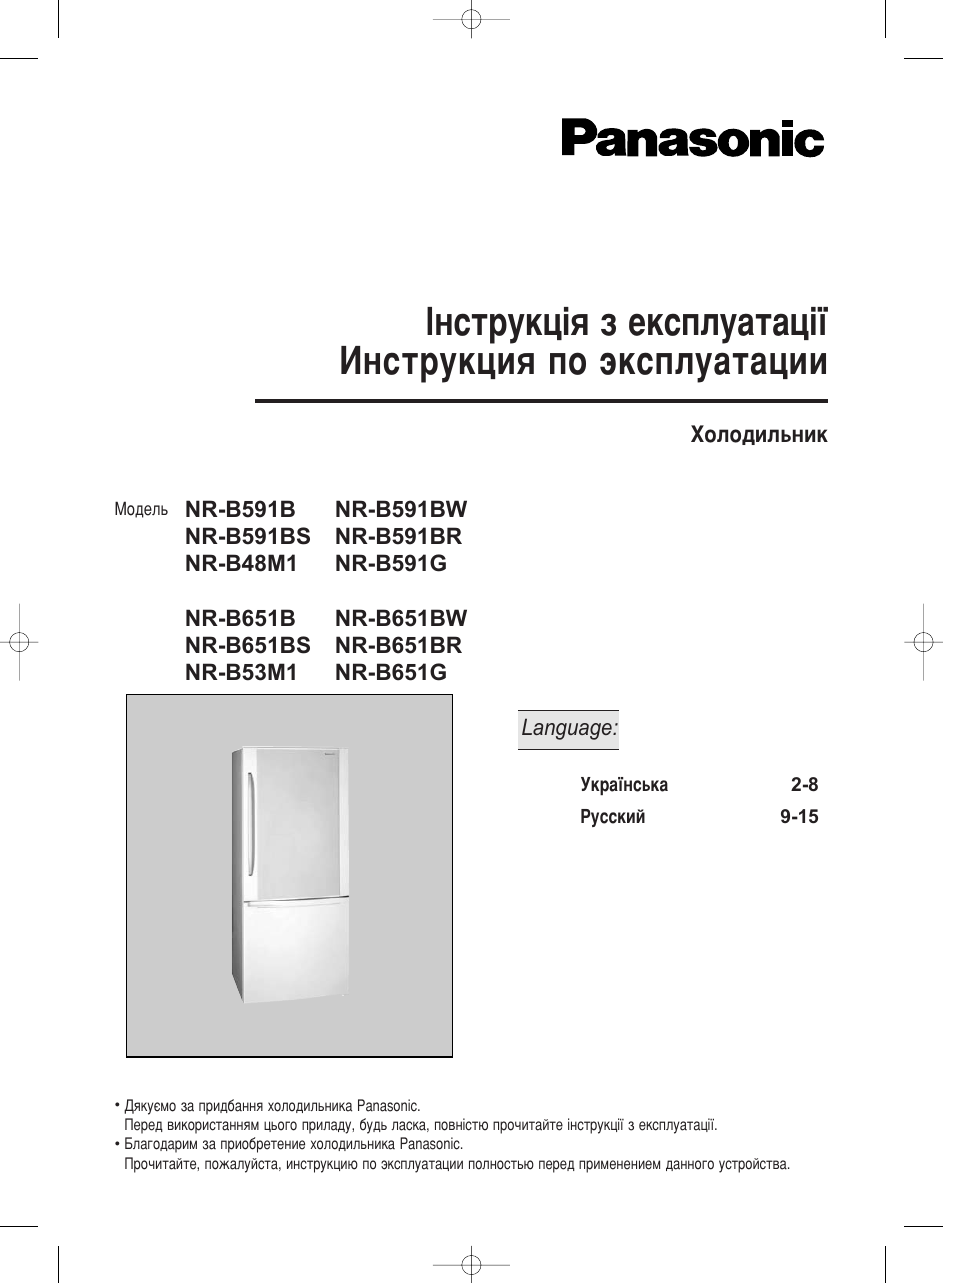 Инструкция по эксплуатации Panasonic NR-B651BR-X4 | 15 страниц